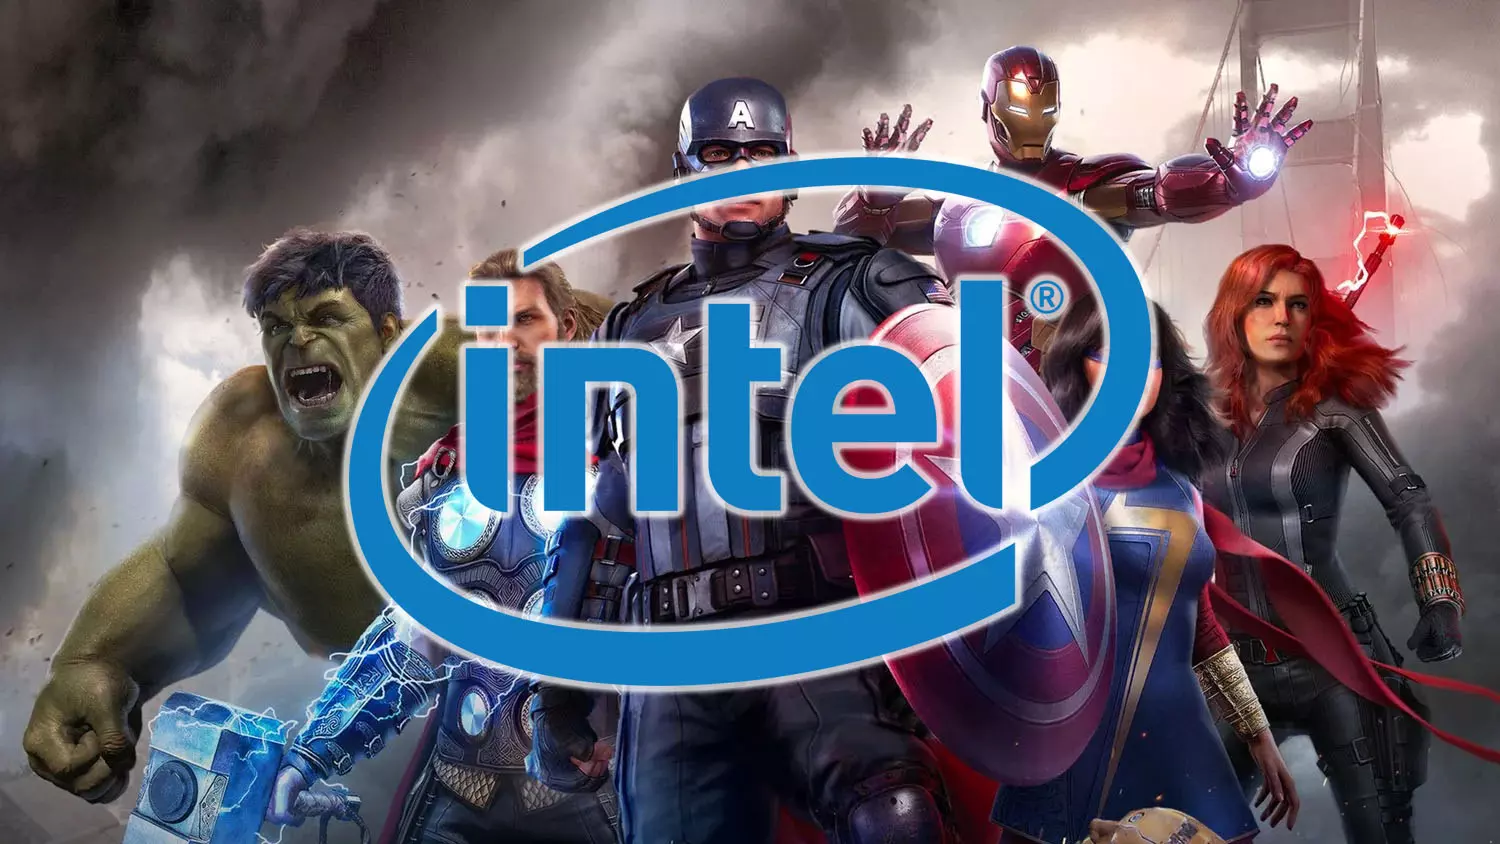 Speciális csomagolásban, Avengers dizájnnal érkezhetnek az Intel KA jelölésű processzorai